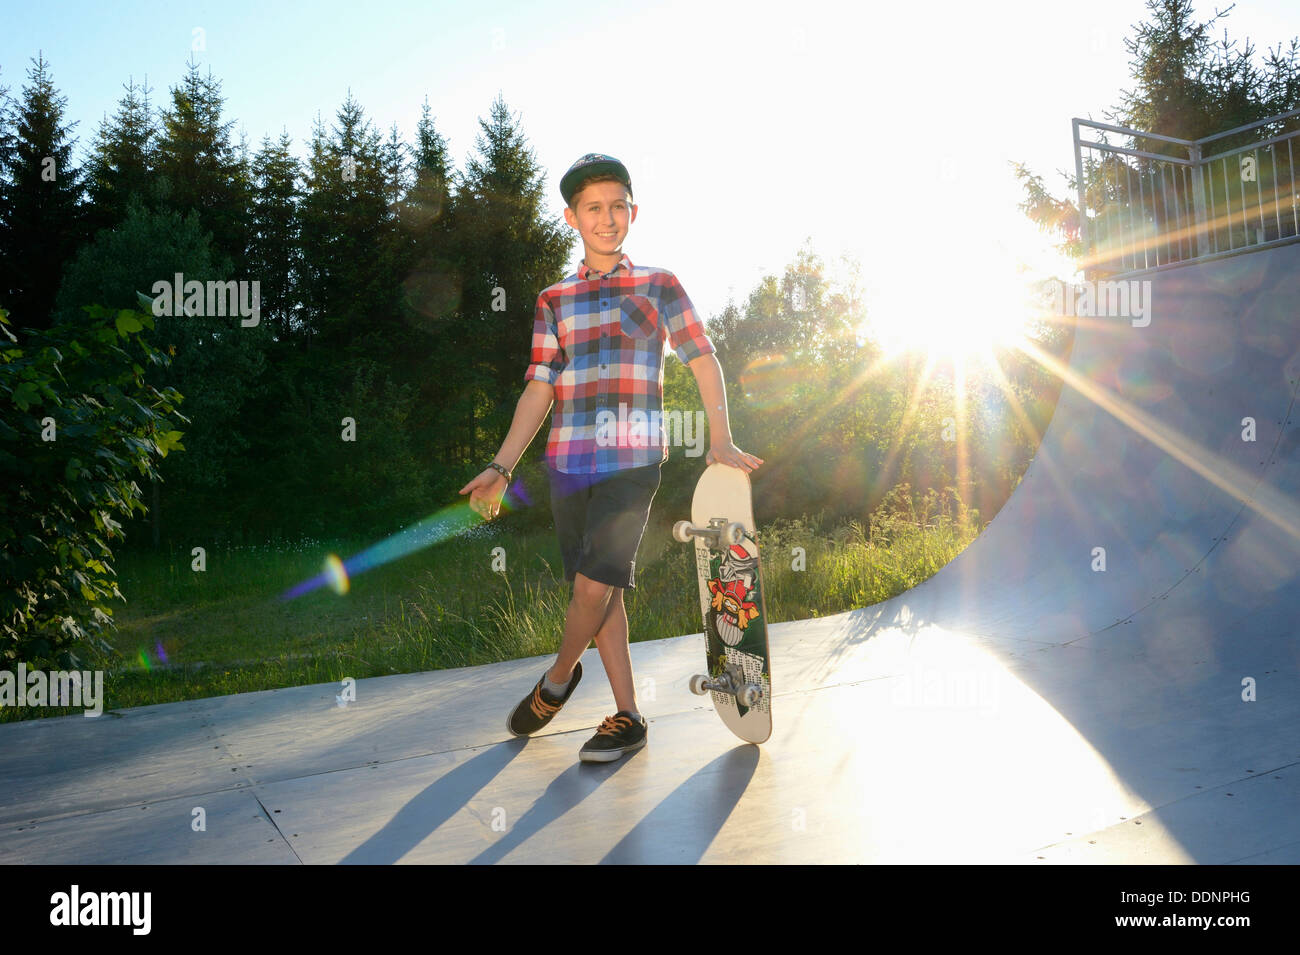 Garçon avec roulettes dans un skatepark Banque D'Images